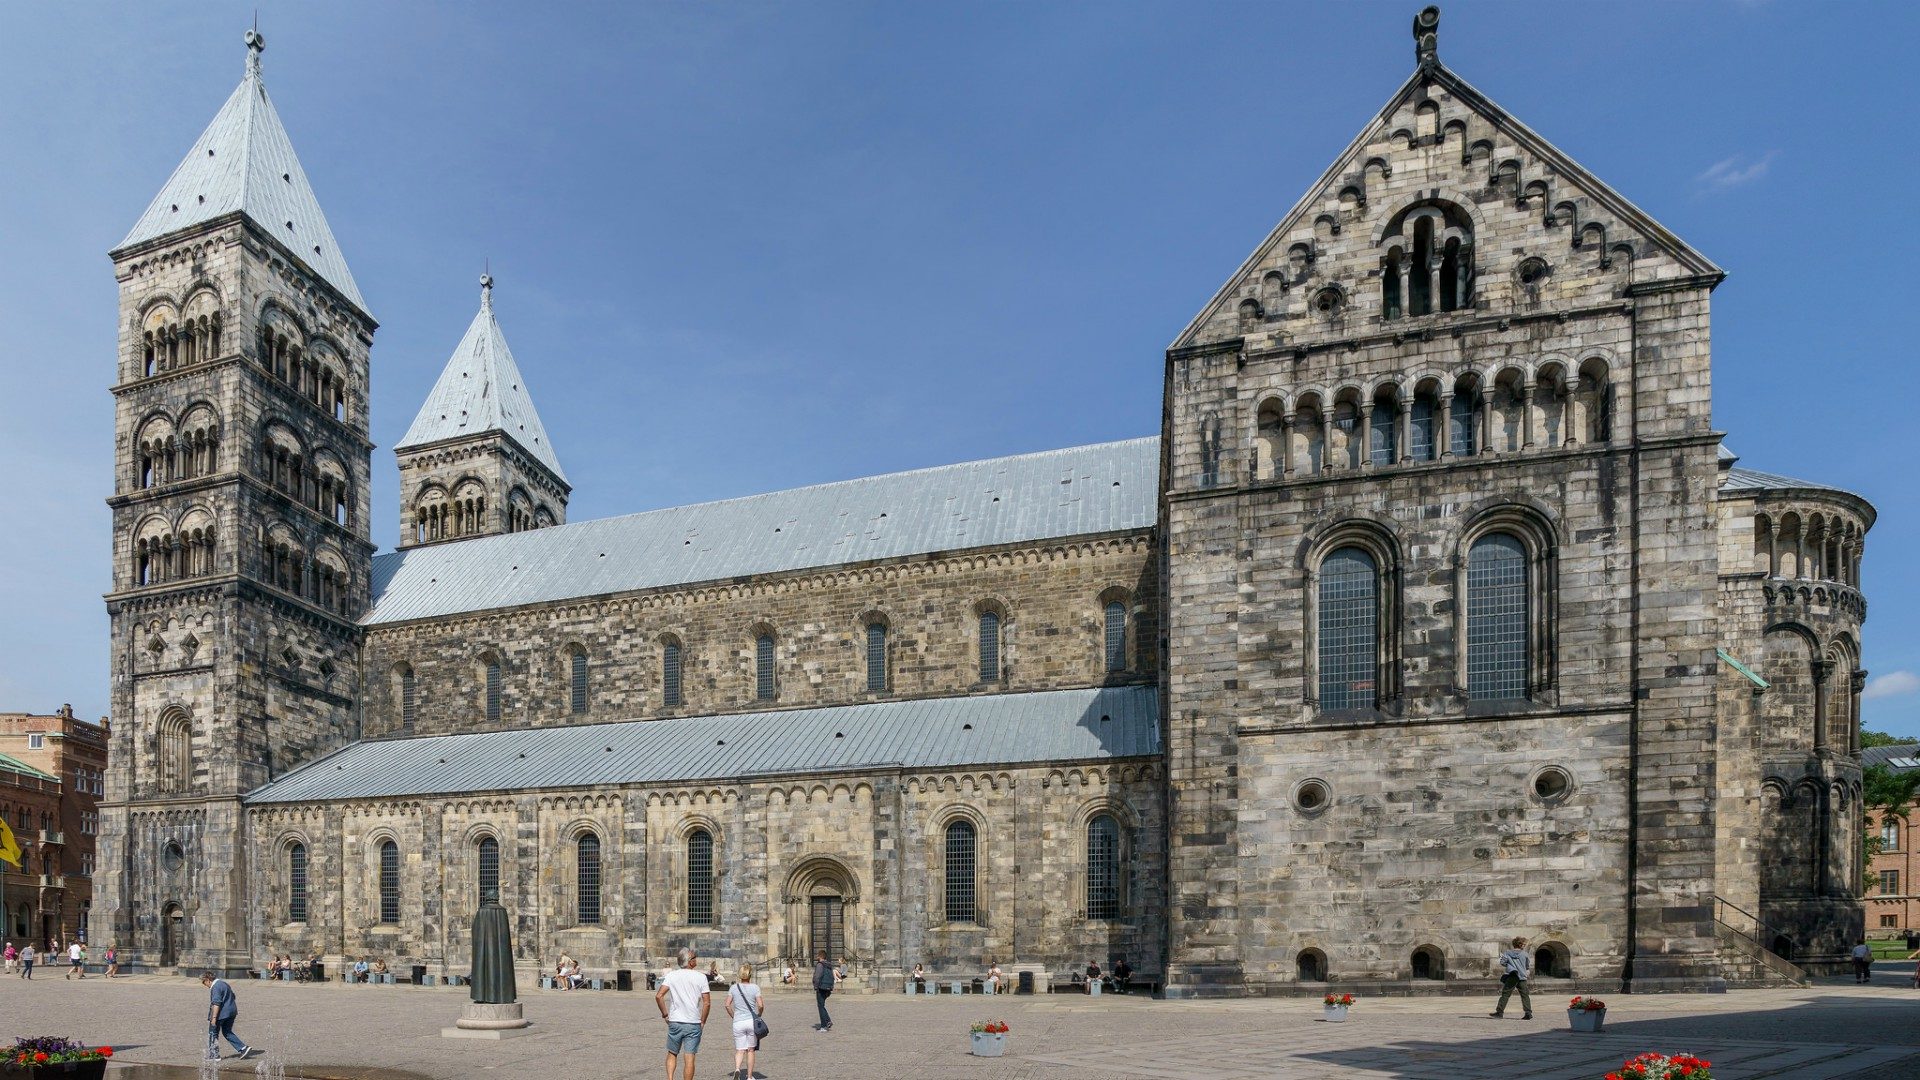 La cathédrale luthérienne de Lund a accueilli le pape François en 2016 (Photo:User:Colin/Flickr/CC BY-SA 2.0)